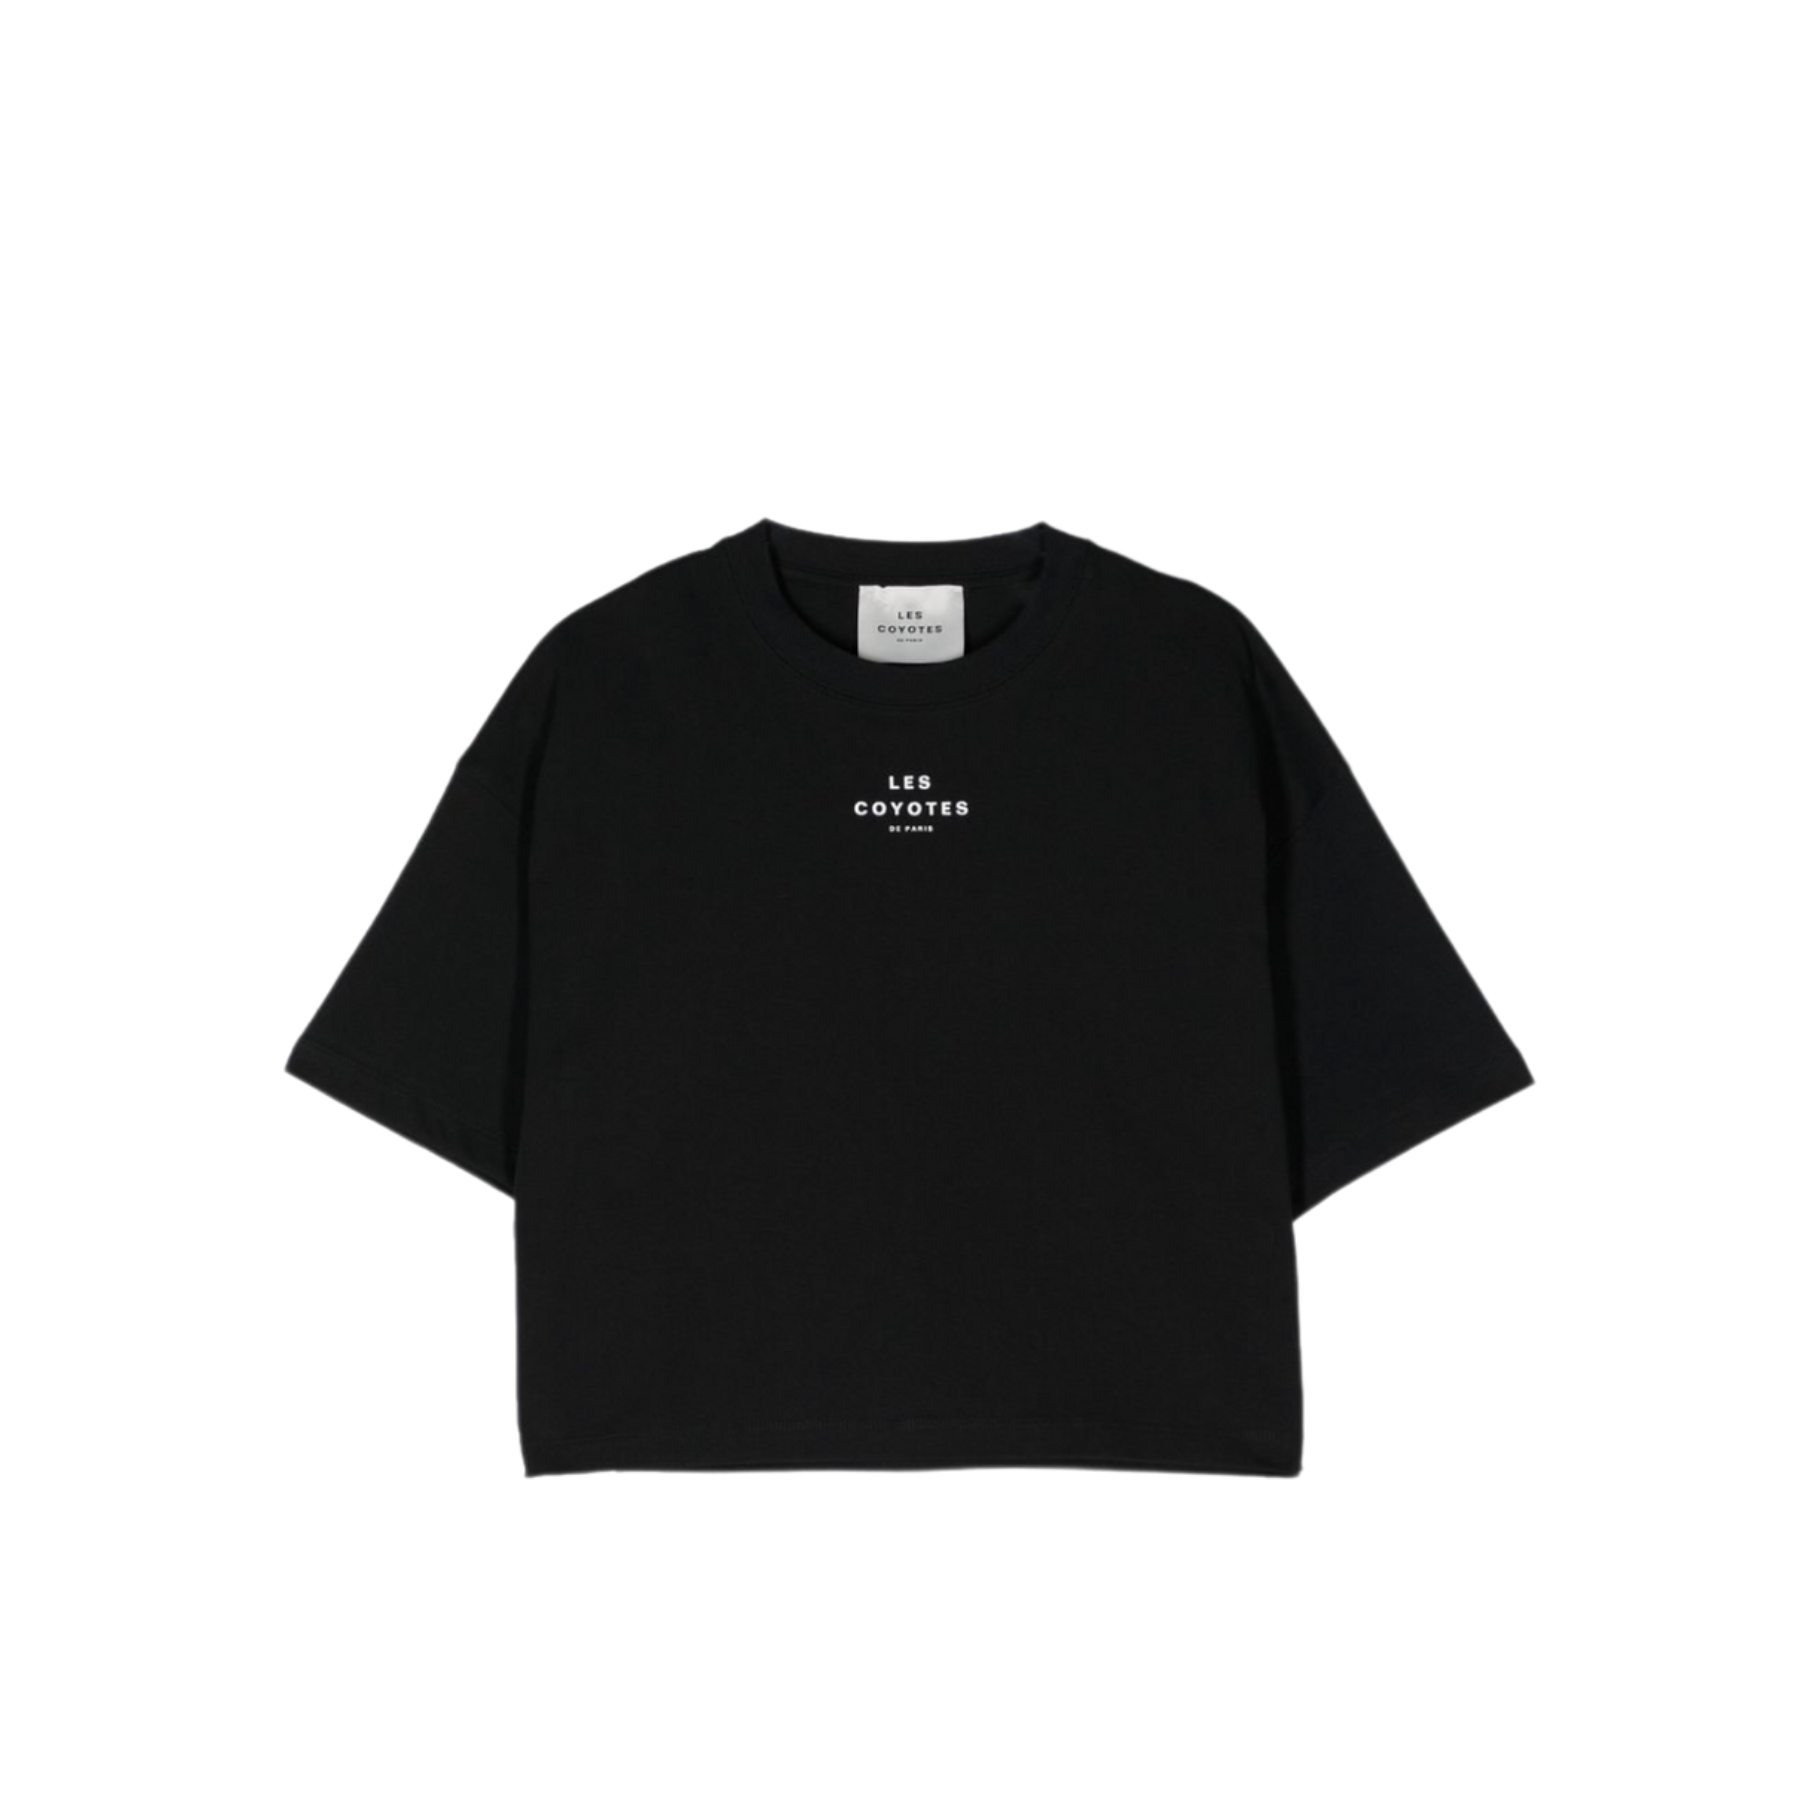 LES COYOTES DE PARIS - Black T-shirt - 10 years